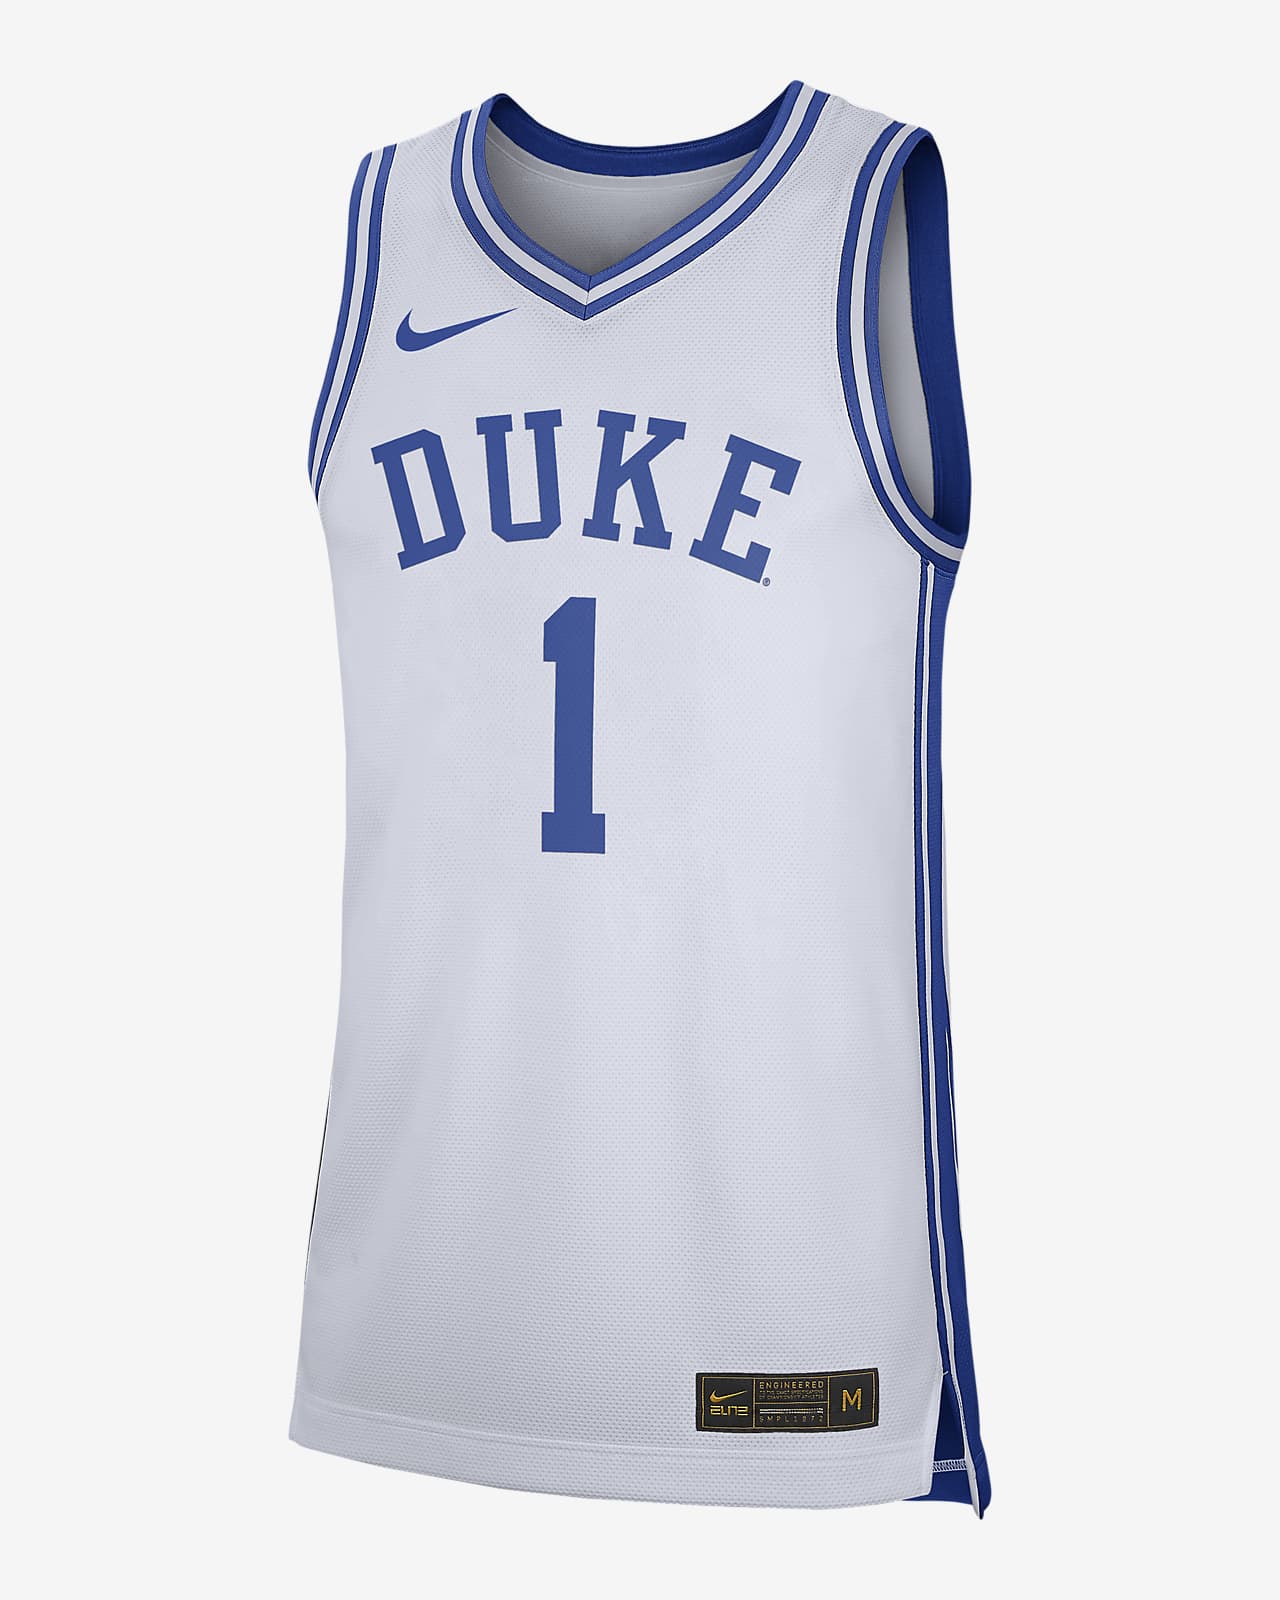 Jersey de hombre NikeCollege Replica (Duke). Nike.com